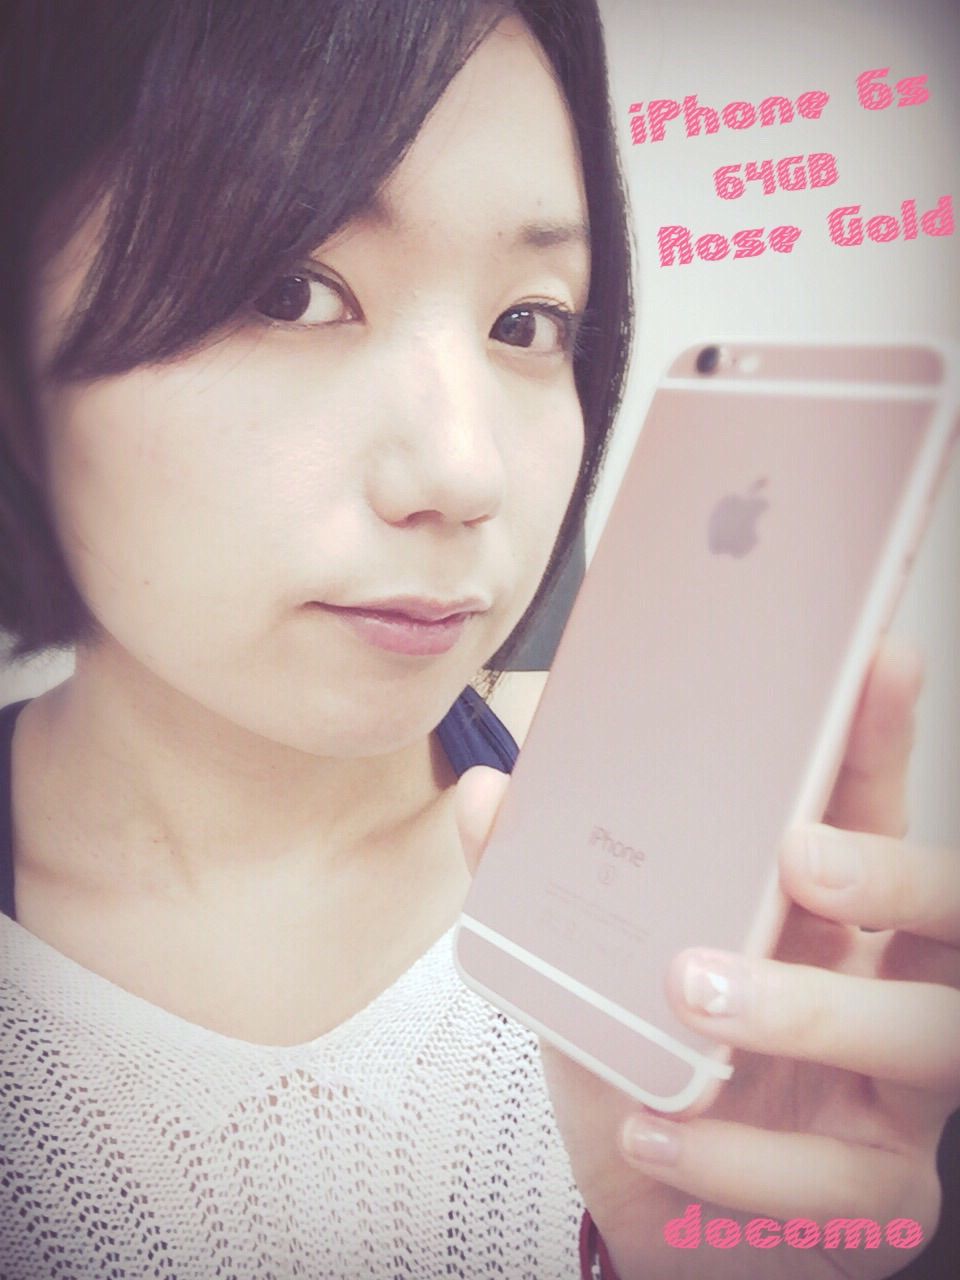 Iphone がピンク色になった日 Iphone 6s ローズゴールドの64gbを買いました 紡ぐ日々 弓月ひろみ公式blog